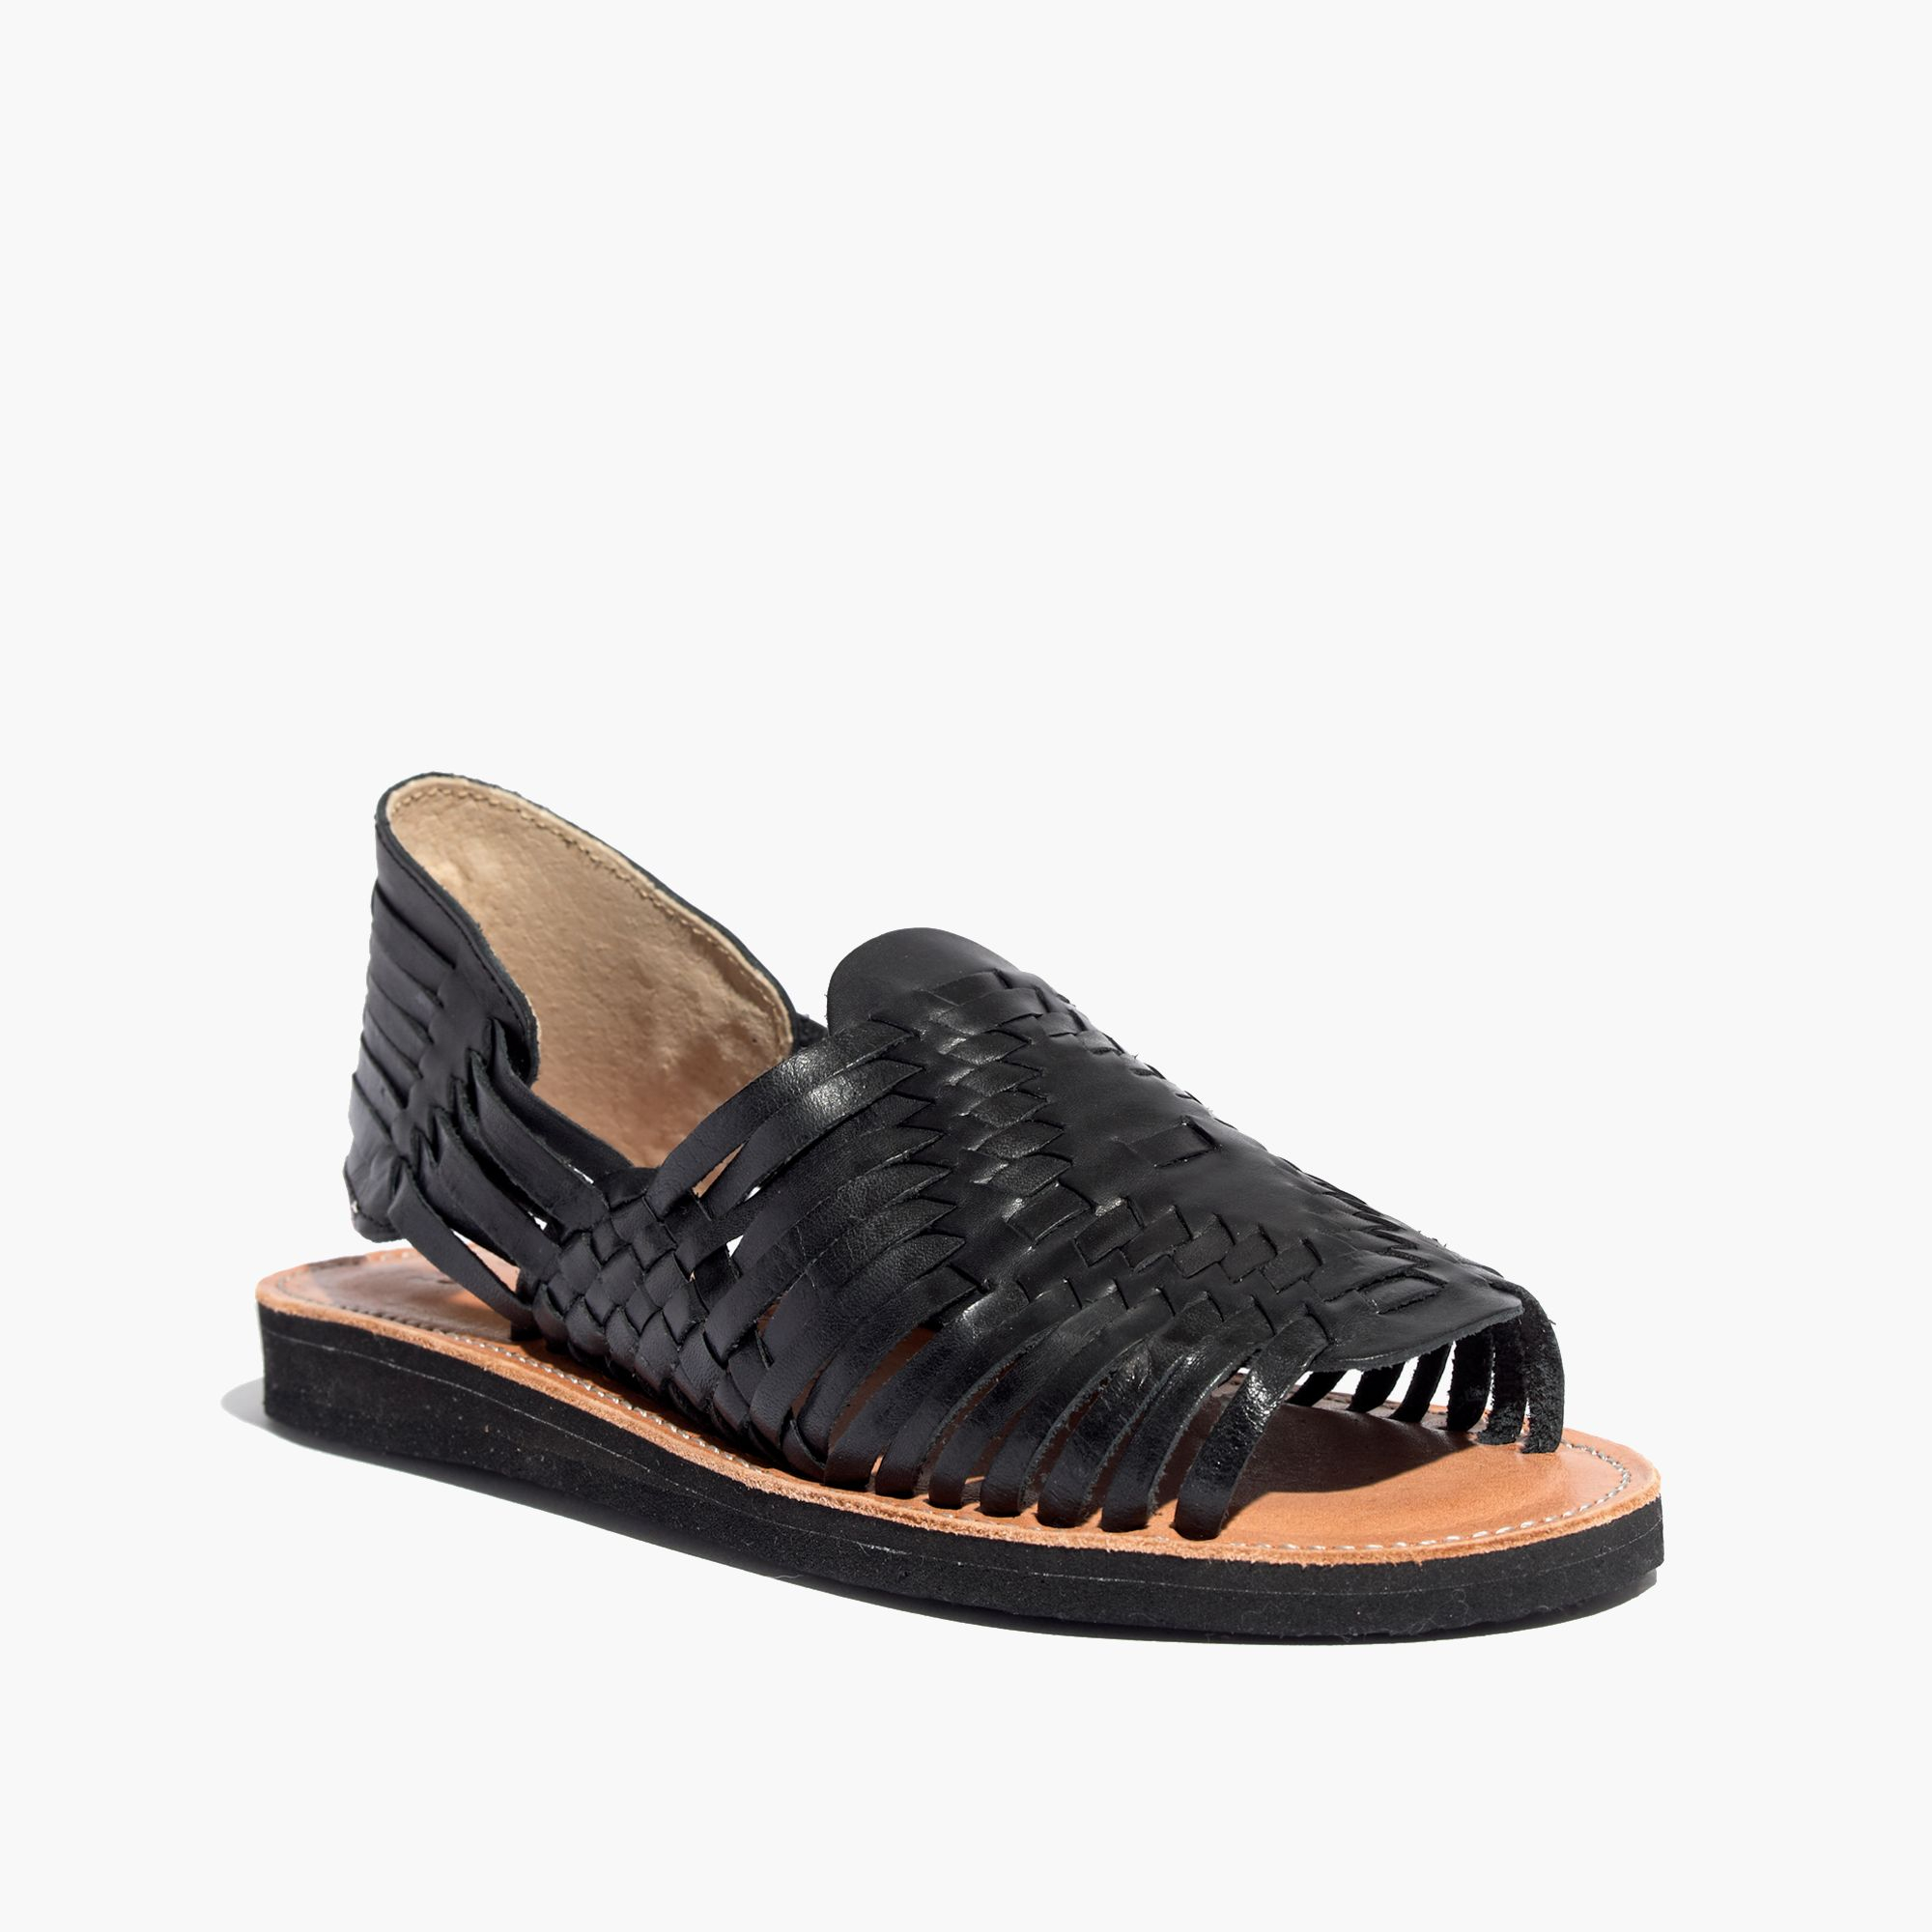 Madewell Chamula™ Slingback Huarache Sandals in Black - Lyst